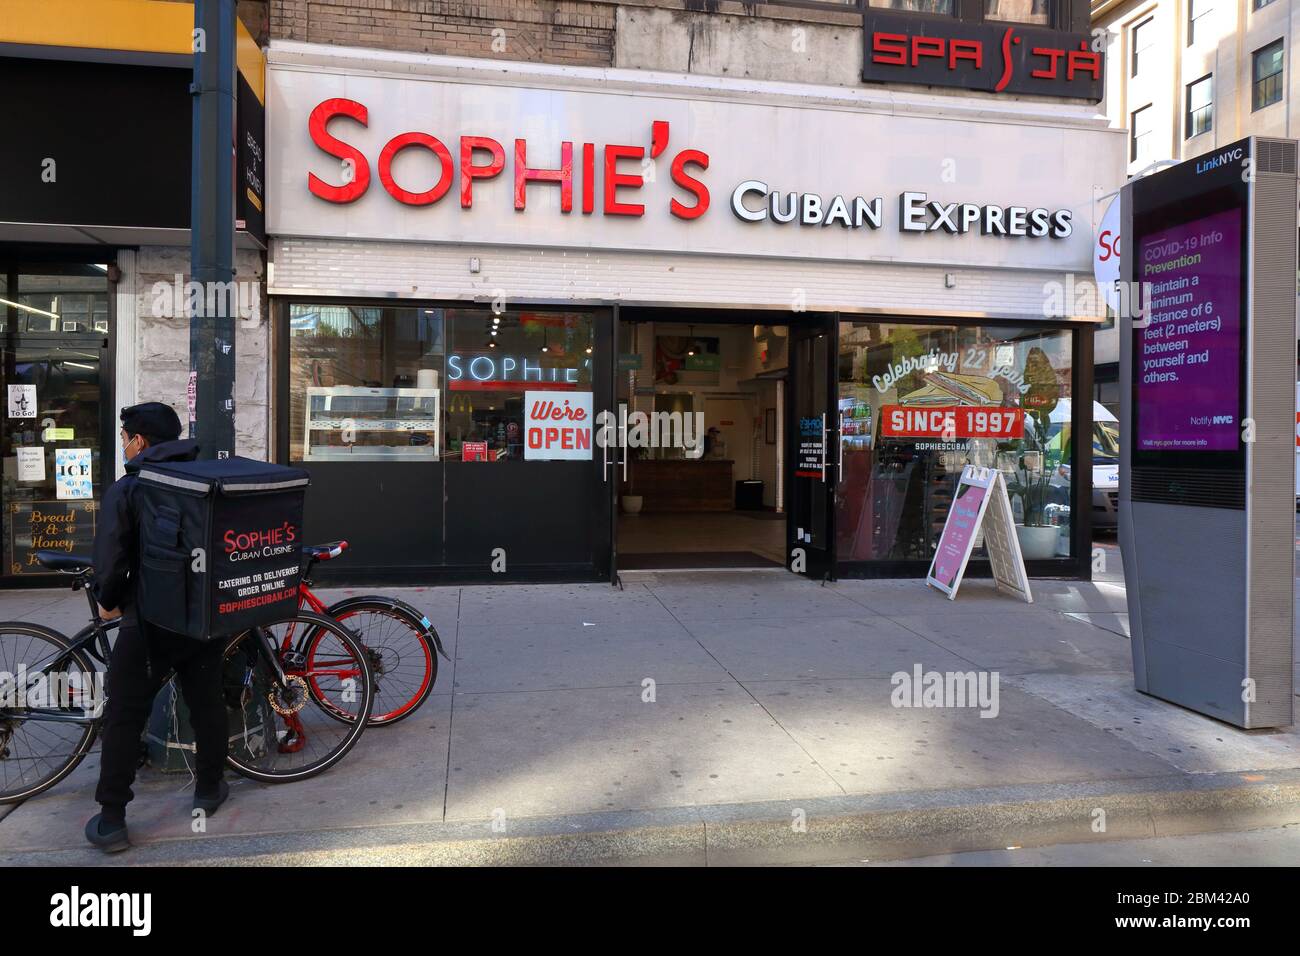 Un expreso cubano de Sophie en Nueva York abierto para el saque y la entrega durante la crisis del coronavirus COVID-19. Foto de stock